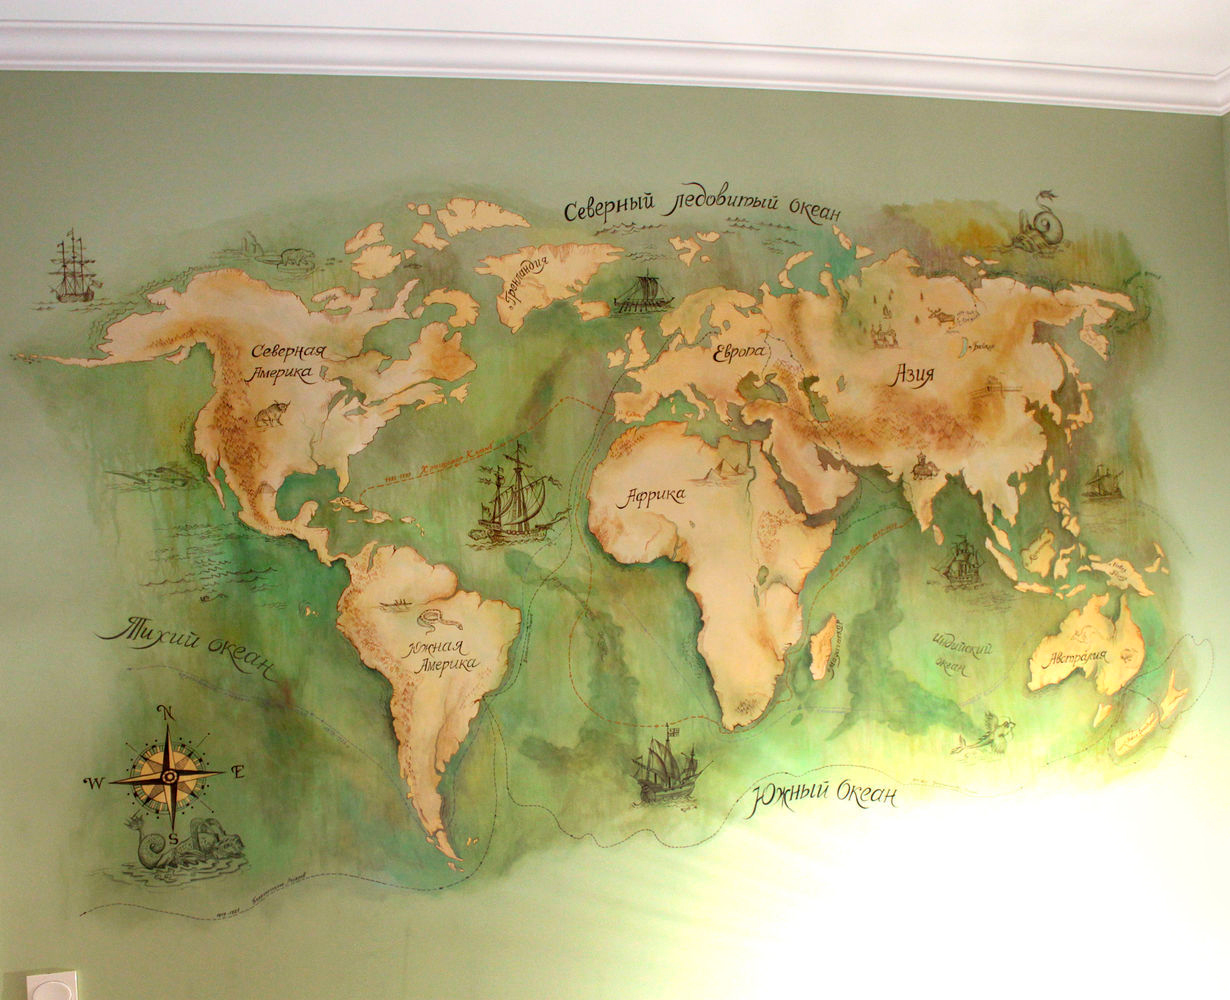 Карта мира на стене: небанальное применение обычных вещей